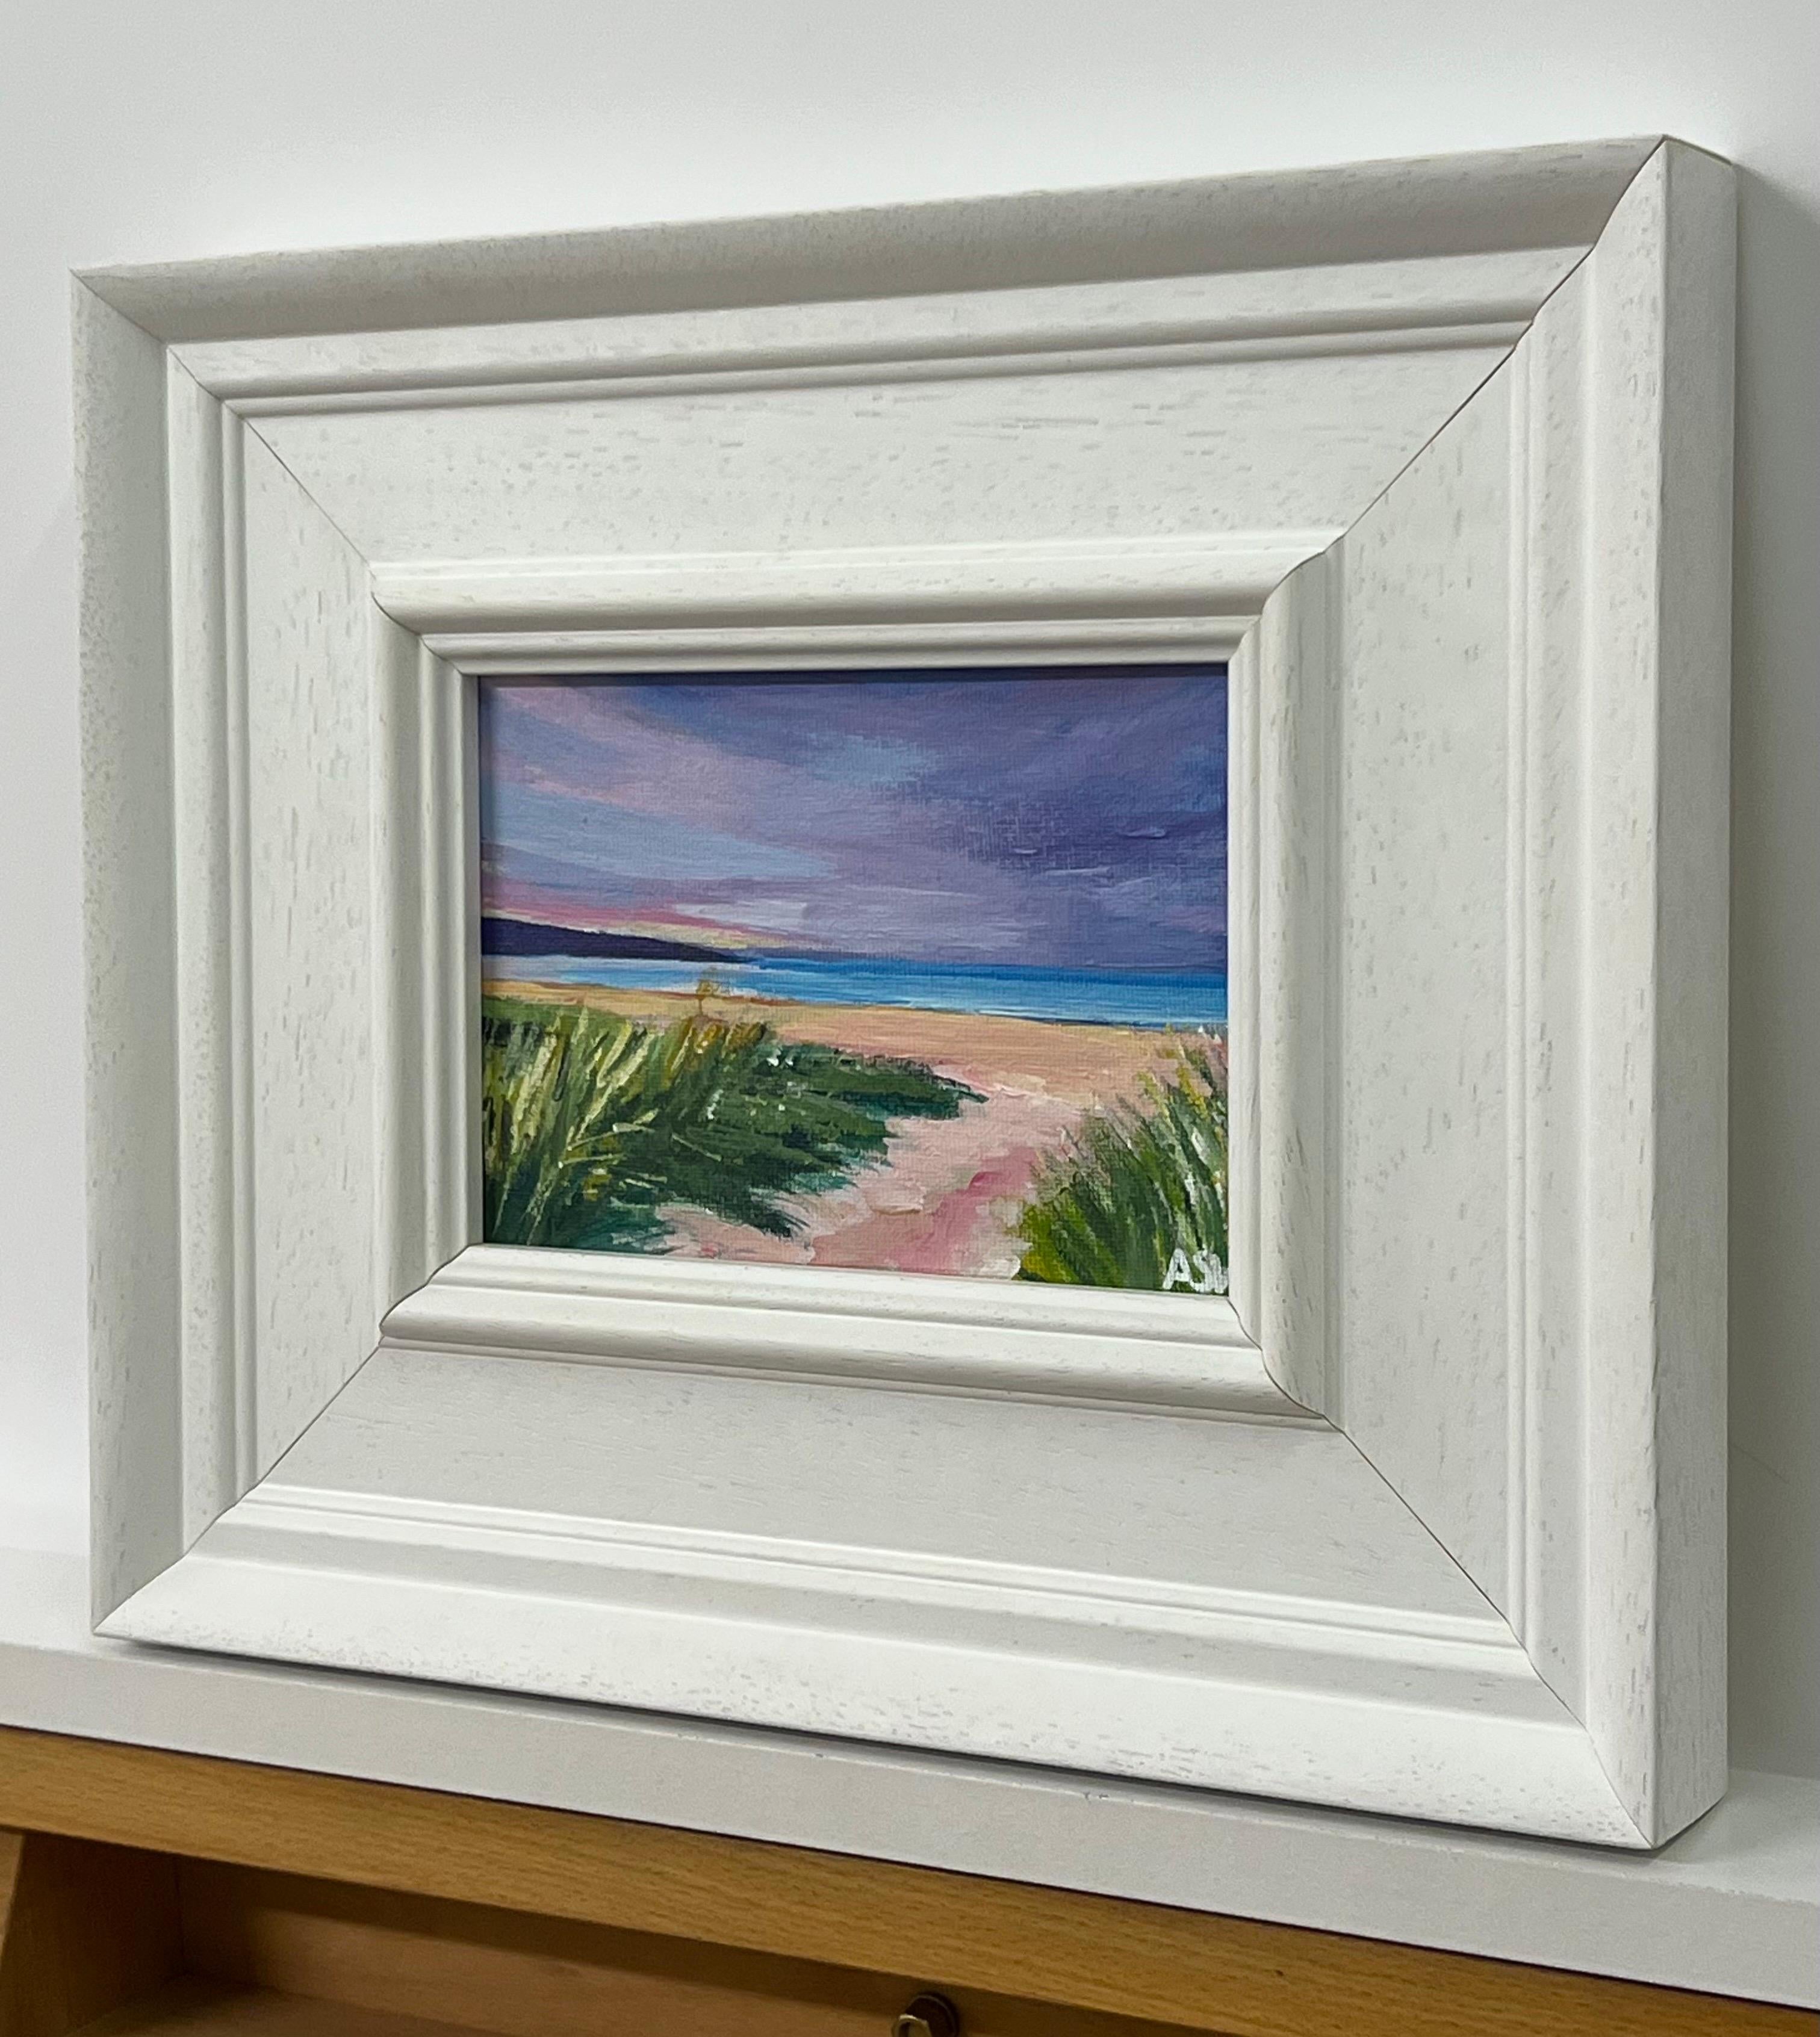 Paysage de plage miniature de la côte est des Highlands écossais par l'artiste britannique contemporaine Angela Wakefield. Plage de Brora, Écosse. 

L'œuvre d'art mesure 7 x 5 pouces
Le cadre mesure 12 x 10 pouces 

Angela Wakefield a fait deux fois